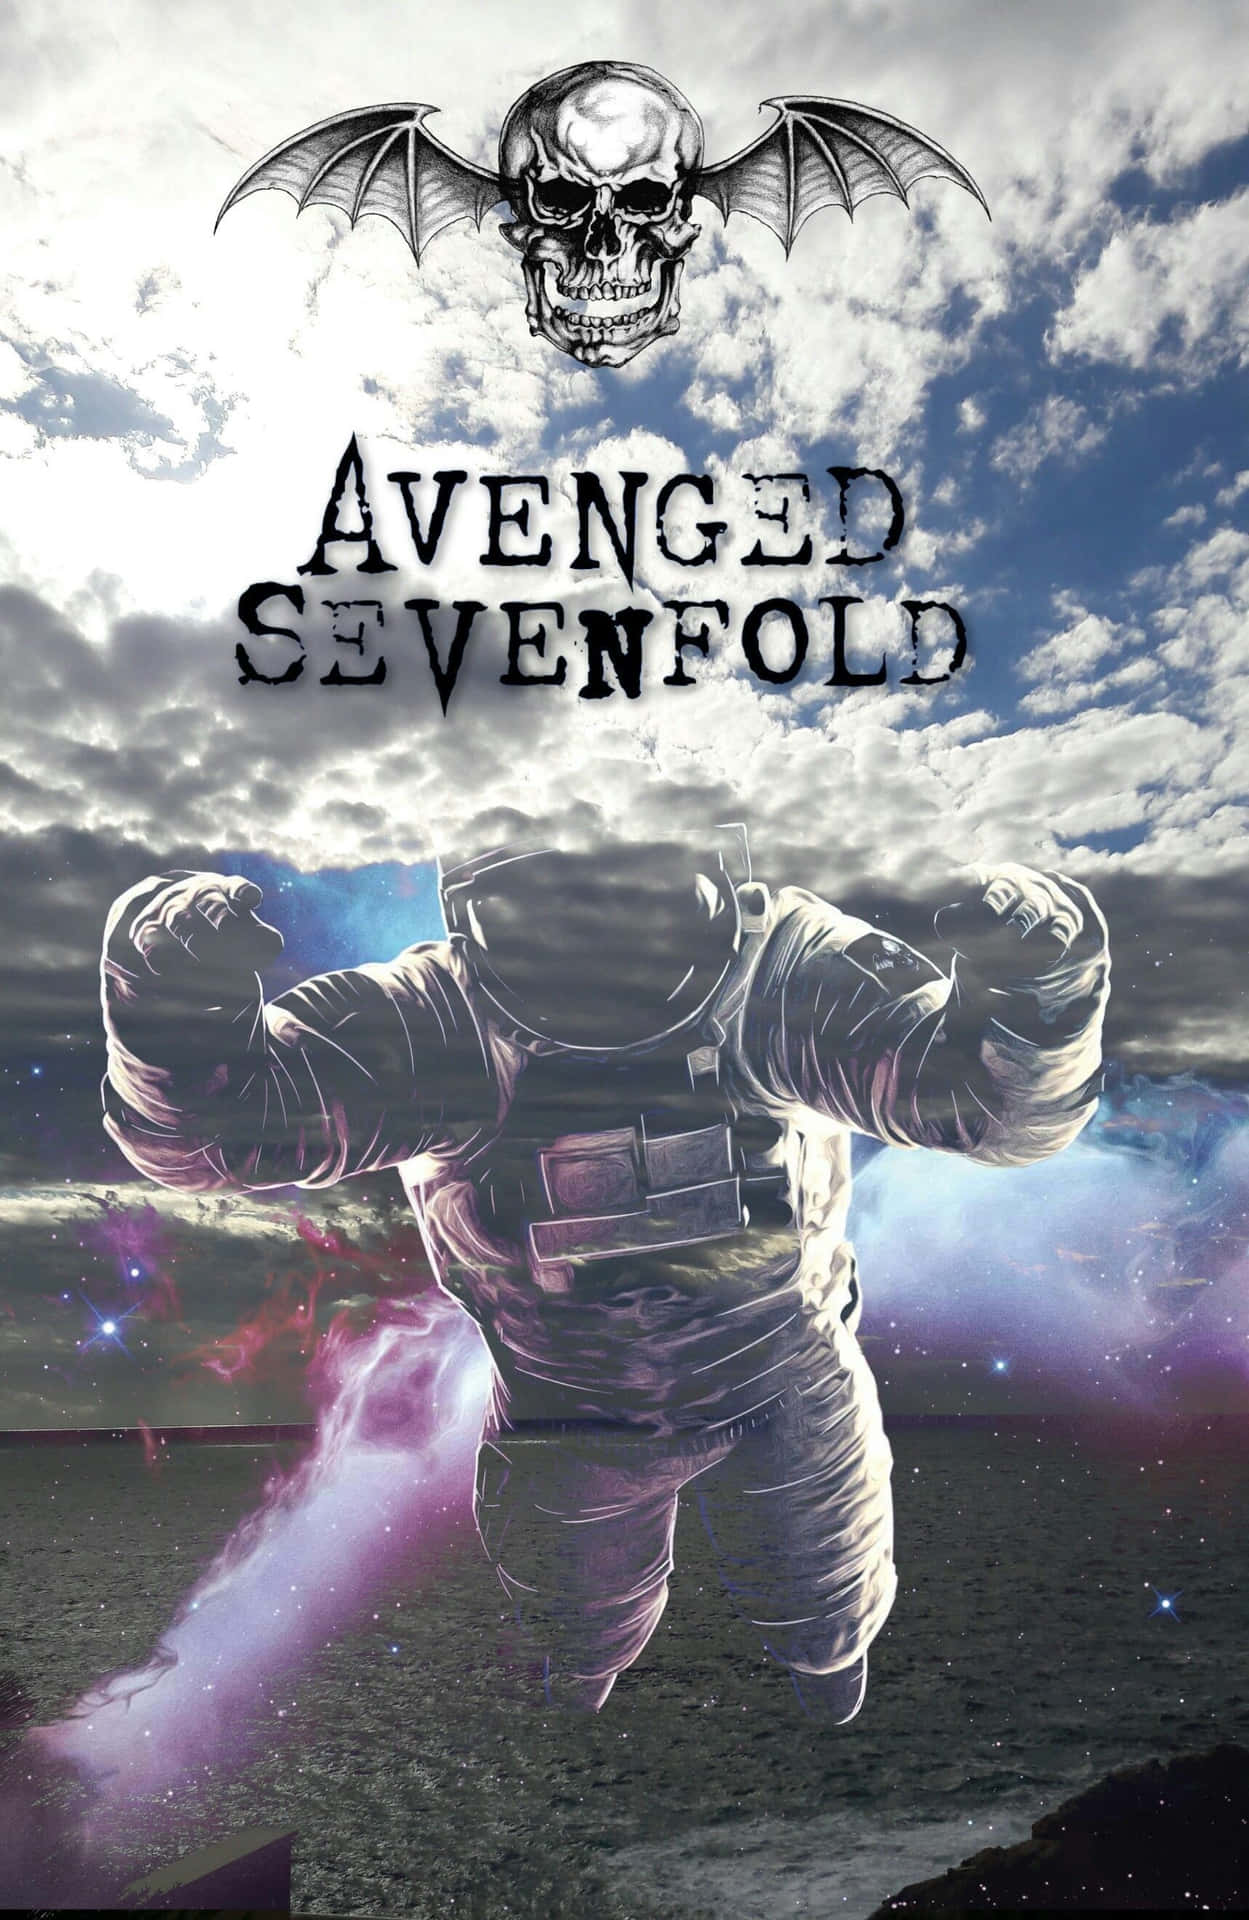 Unaimagen De Avenged Sevenfold, La Popular Banda De Heavy Metal Fondo de pantalla